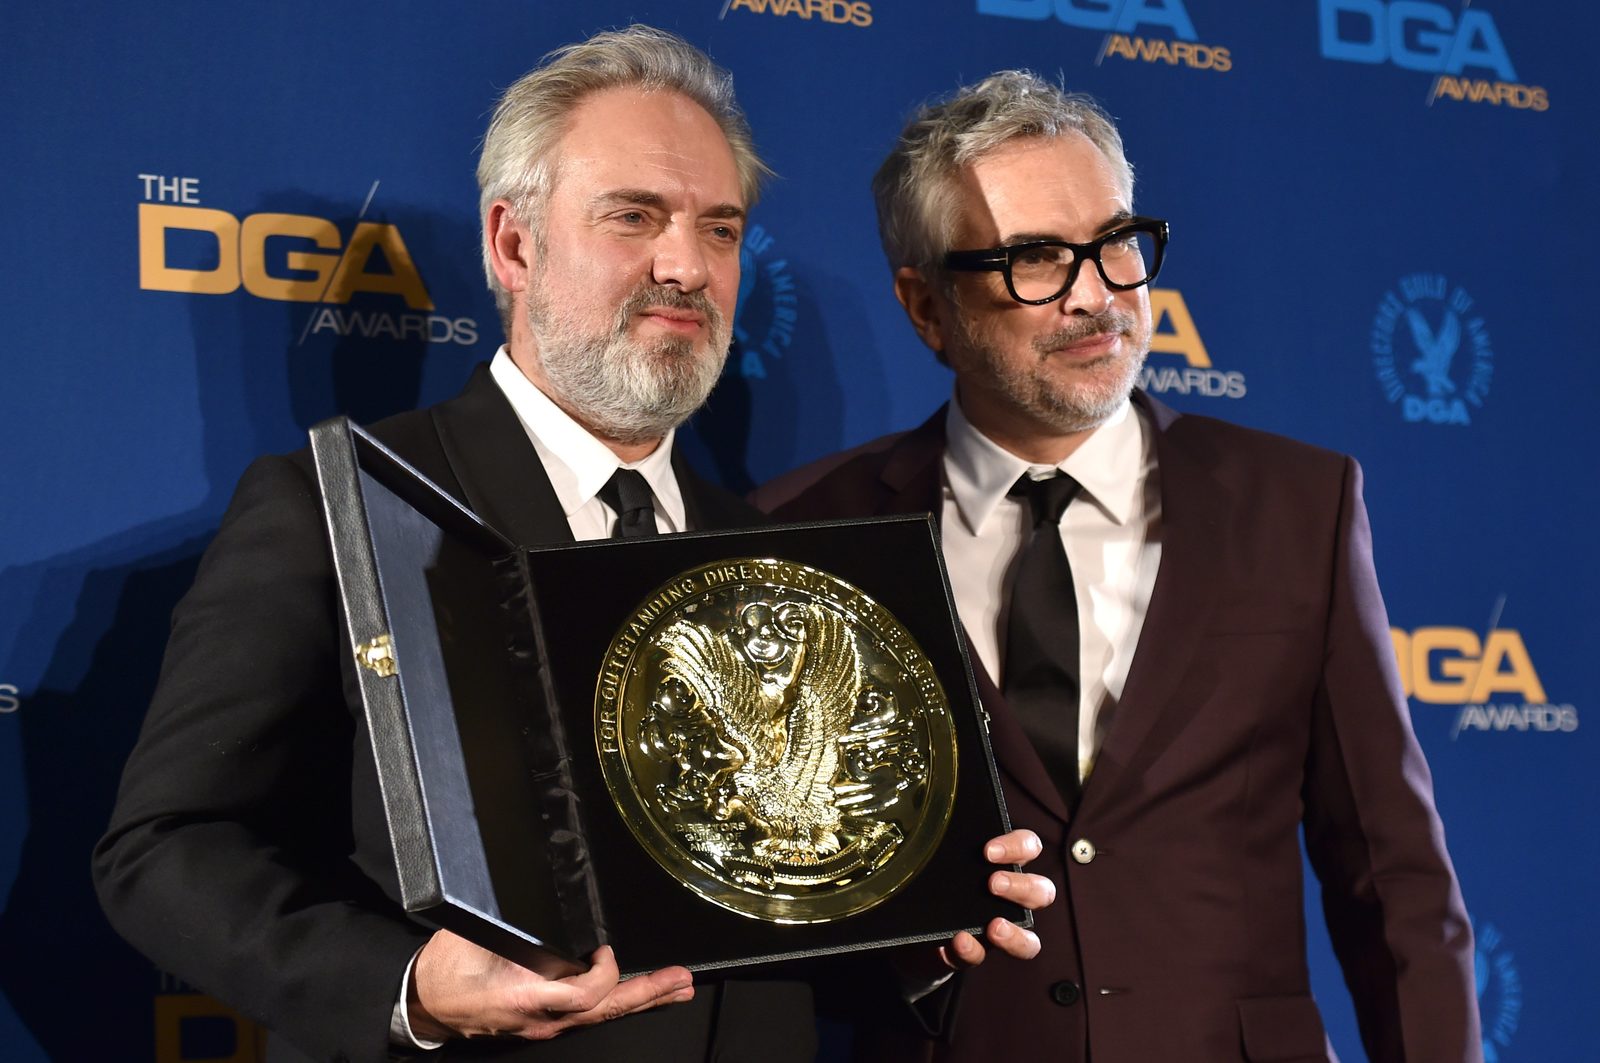 Сэм Мендес признан постановщиком года по версии Гильдии режиссёров Америки